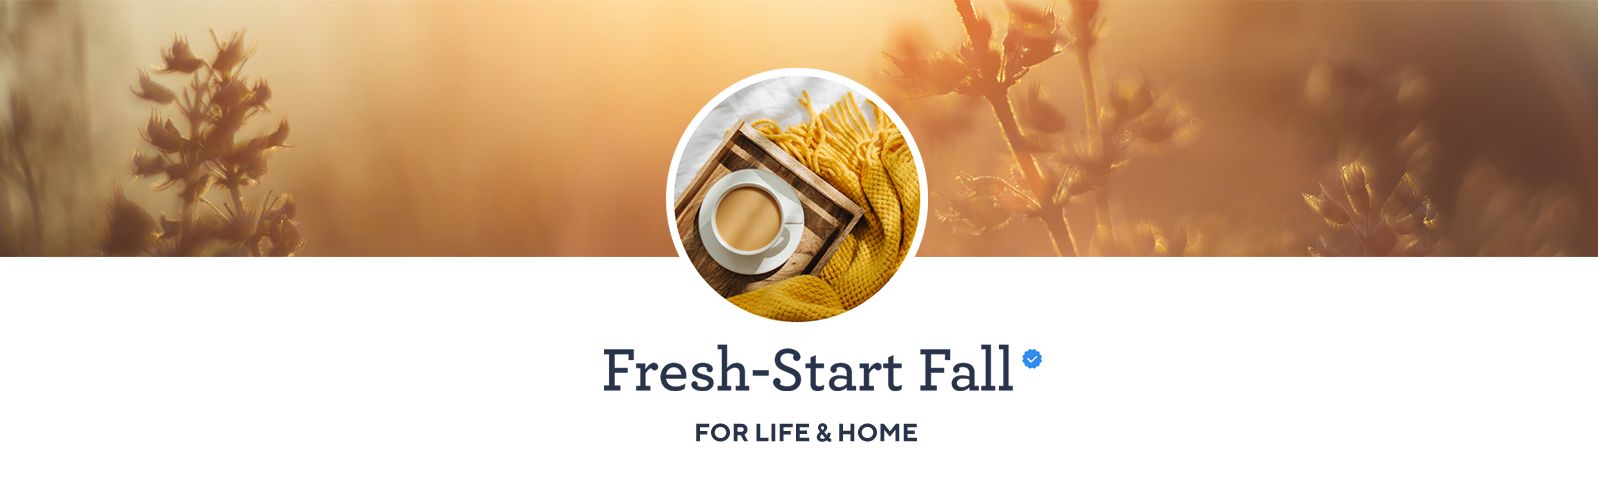 Fresh-Start Fall. For Life & Home